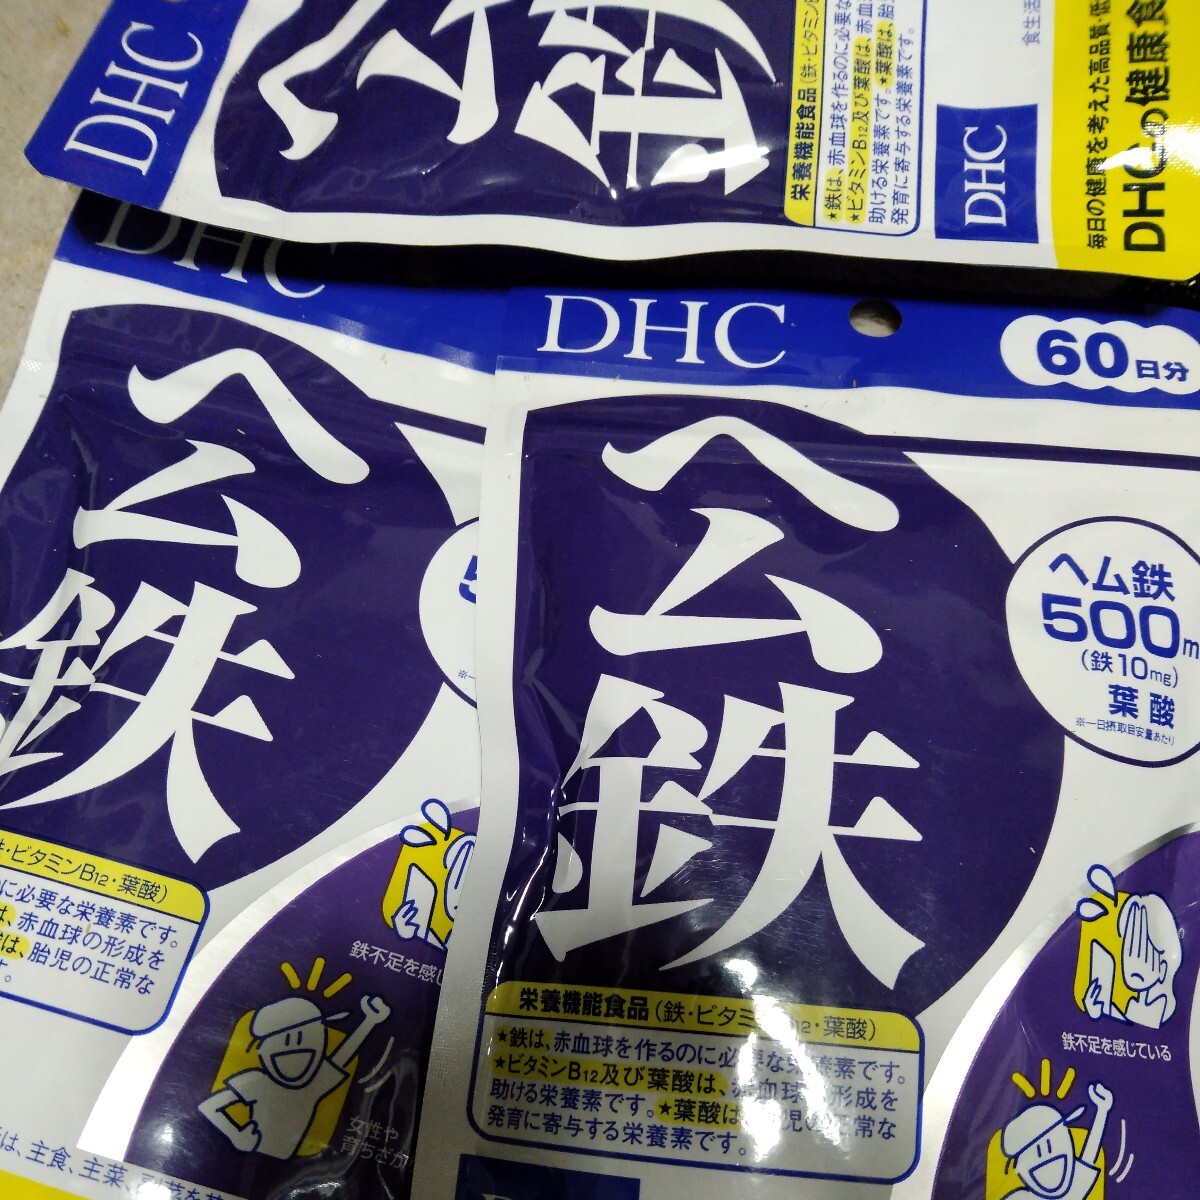 DHC ヘム鉄 60日分 鉄分・葉酸・ビタミンB ディーエイチシーサプリメント 健康食品 3袋_画像1